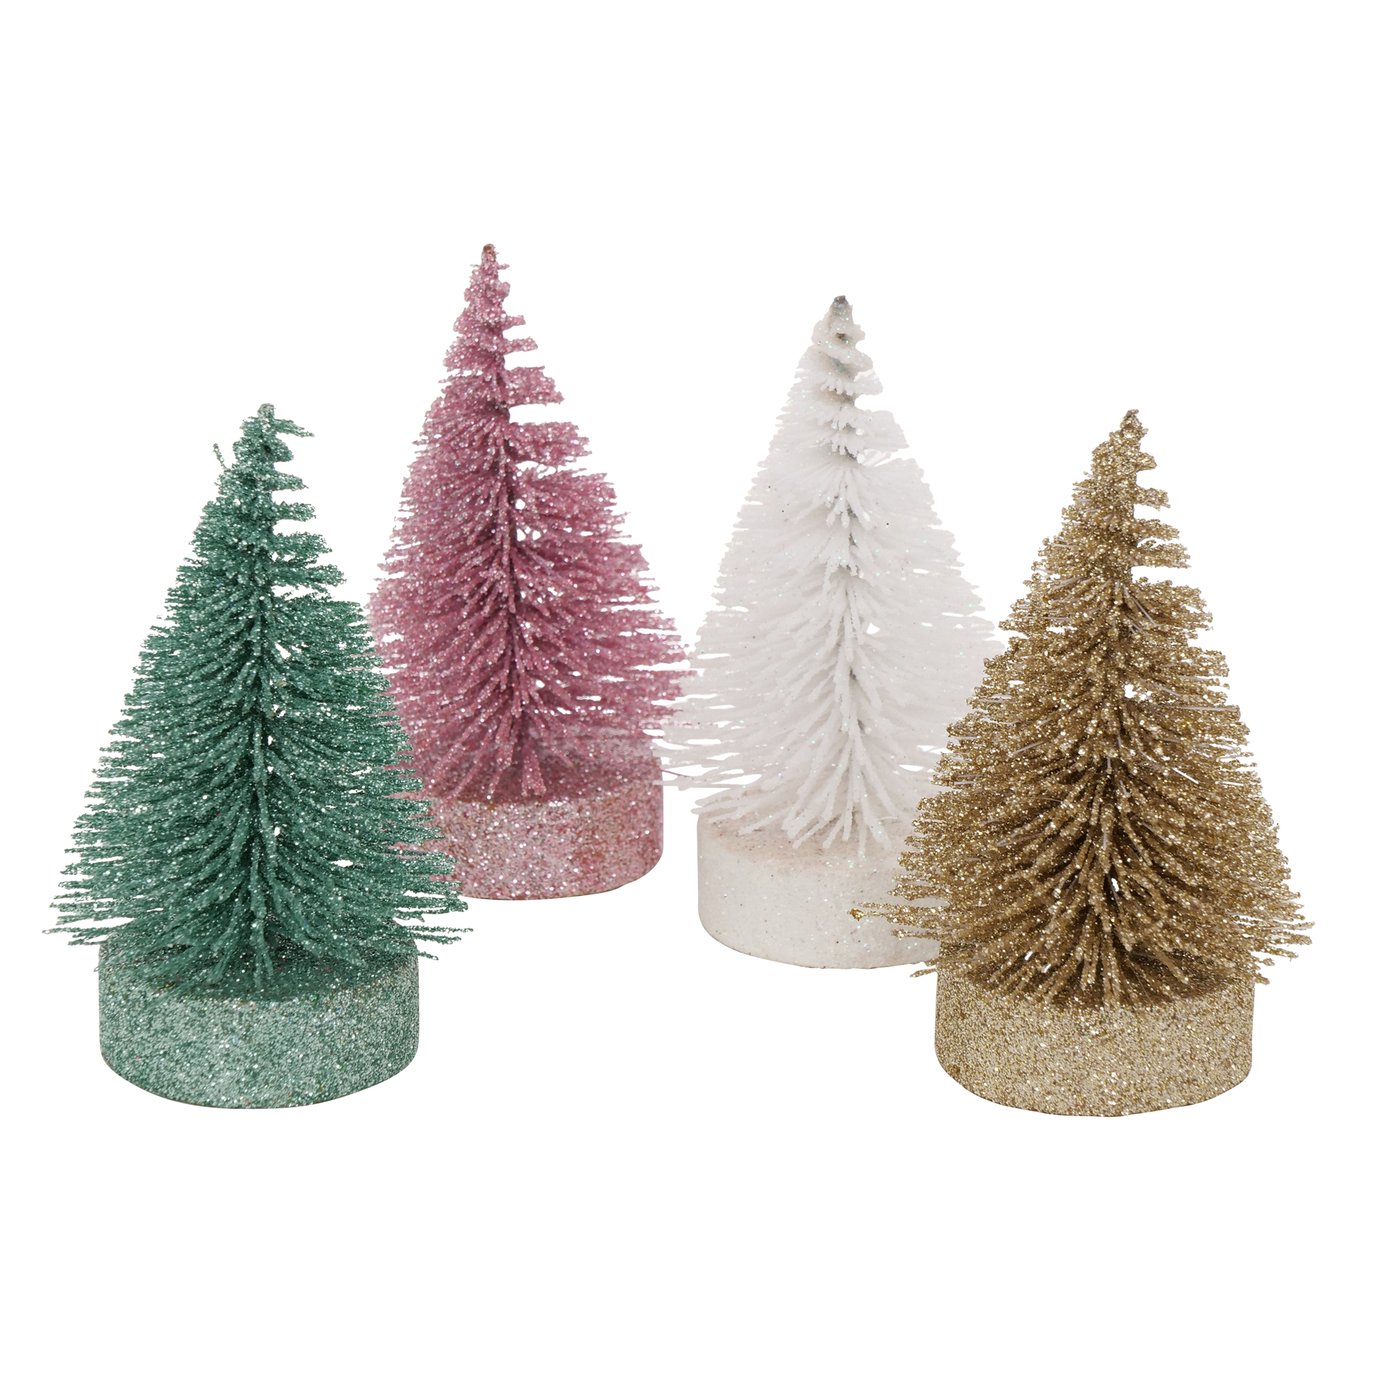 Deko Aufsteller mini Weihnachtsbaum "Borsty" grün pink weiß gold Glitzer, 2024760, 4066076071753, Boltze Xmas online kaufen